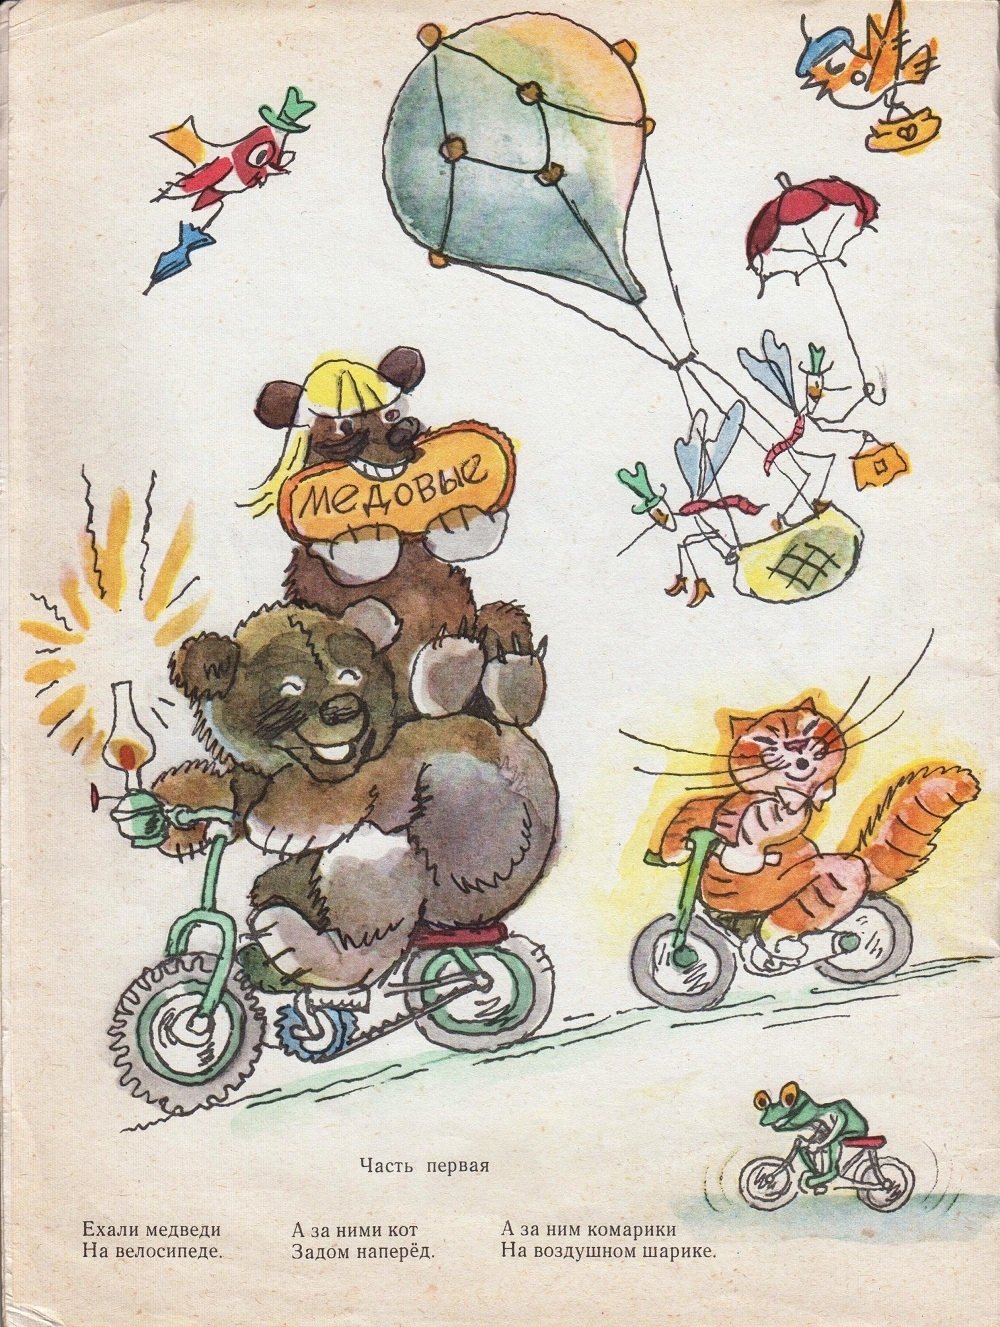 Тараканище ехали медведи на велосипеде. Тараканище Чуковский ехали медведи на велосипеде. Корнея Чуковского Тараканище ехали медведи на велосипеде. Рисунки Чуковский комарики на воздушном шарике.